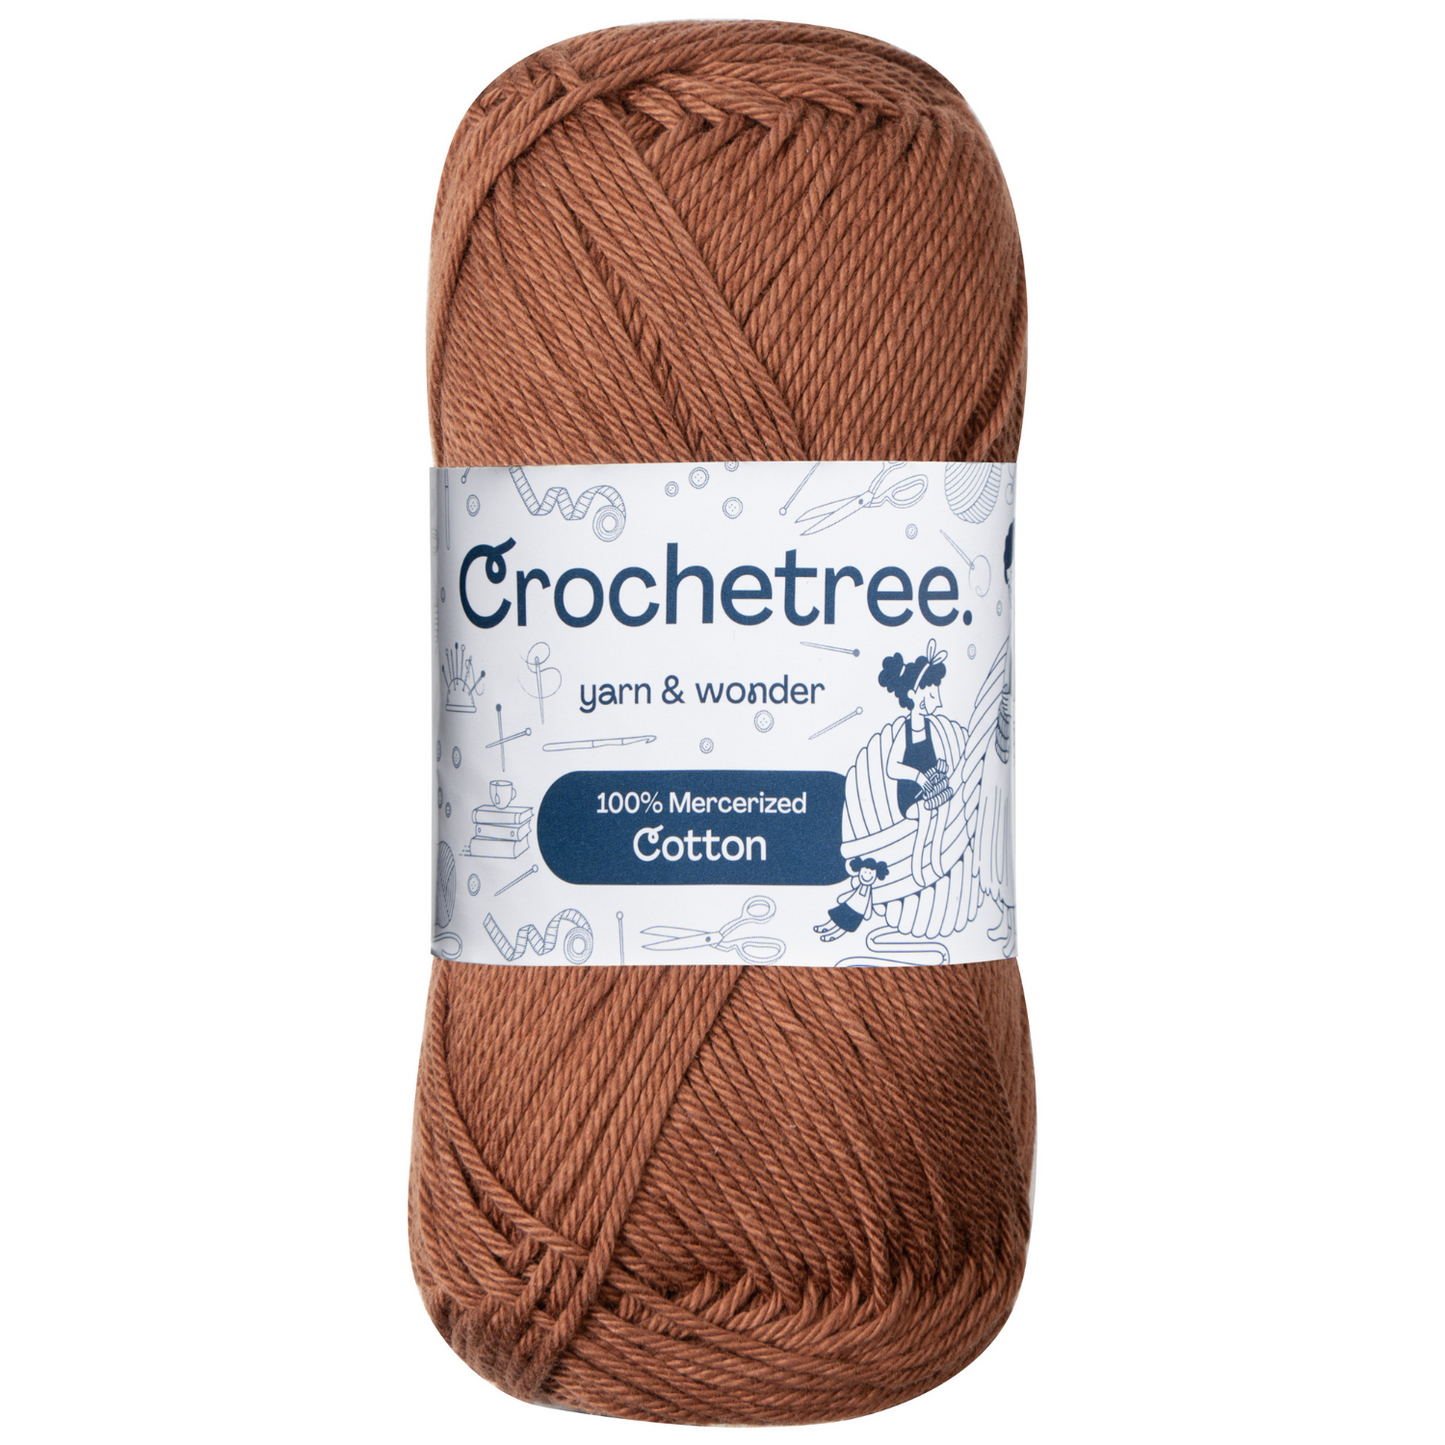 Crochetree 100% Mercerized Cotton Yarn 50g